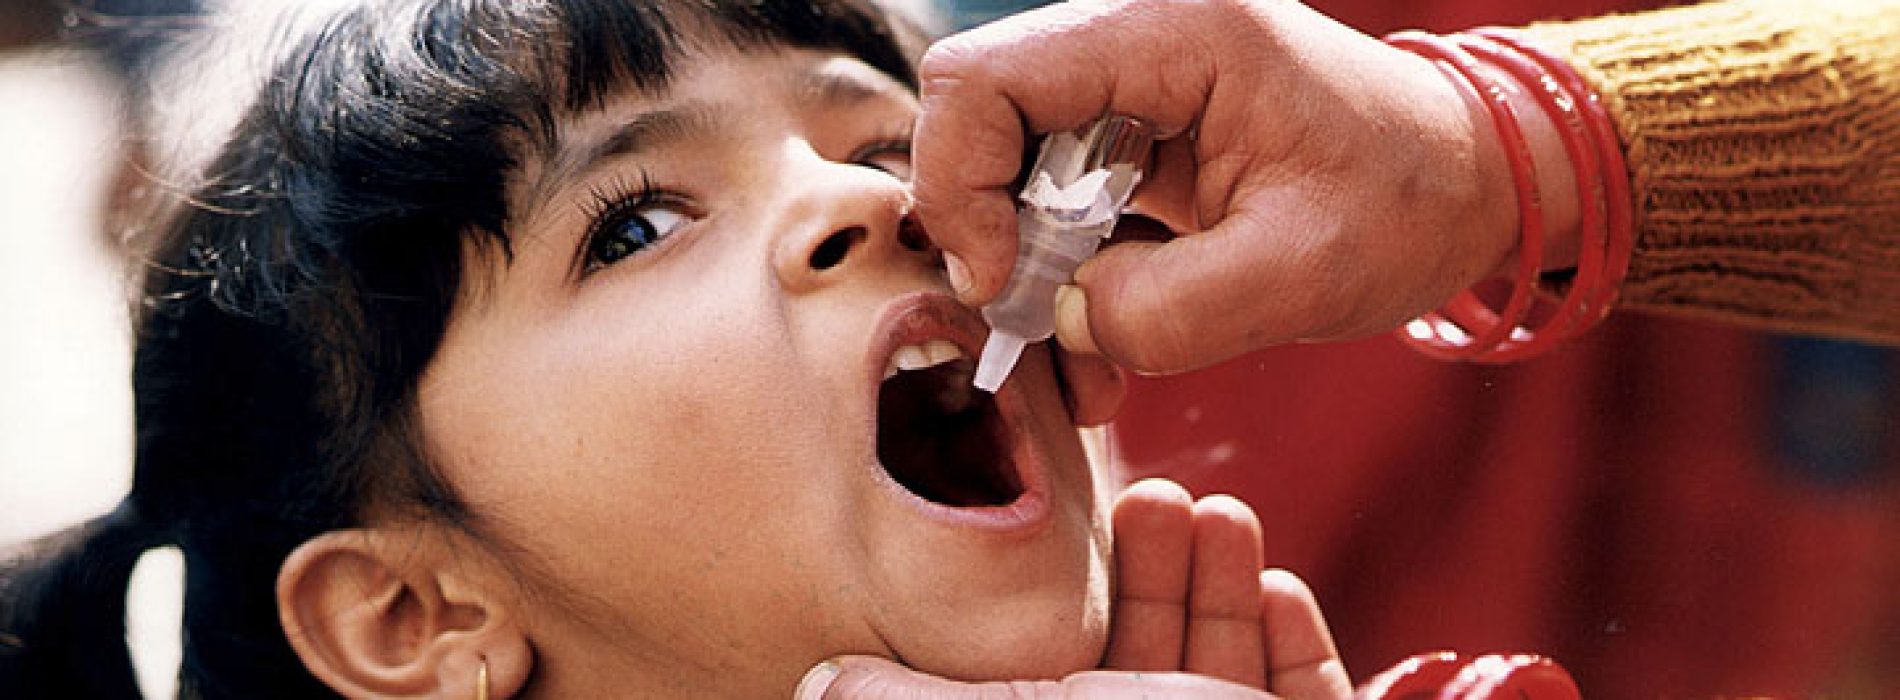 Als het poliovaccin echt een “wonderdoorbraak” was voor de volksgezondheid, waarom zorgt het er dan nog steeds voor dat mensen polio krijgen?